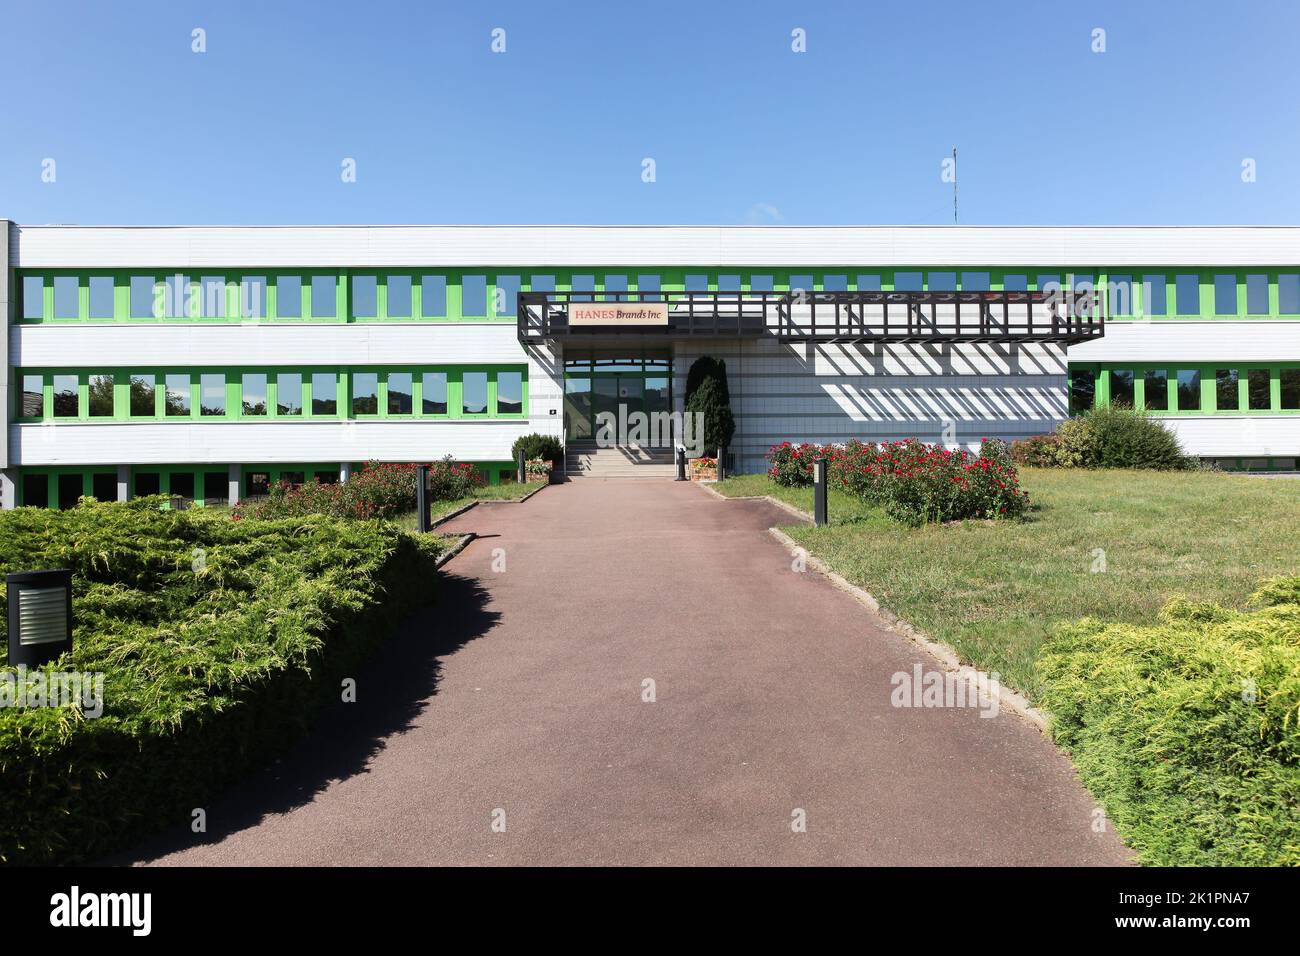 Autun, Francia - 5 de julio de 2020: Edificio de oficinas de Hanesbrands inc and Dim en Autun, Francia Foto de stock